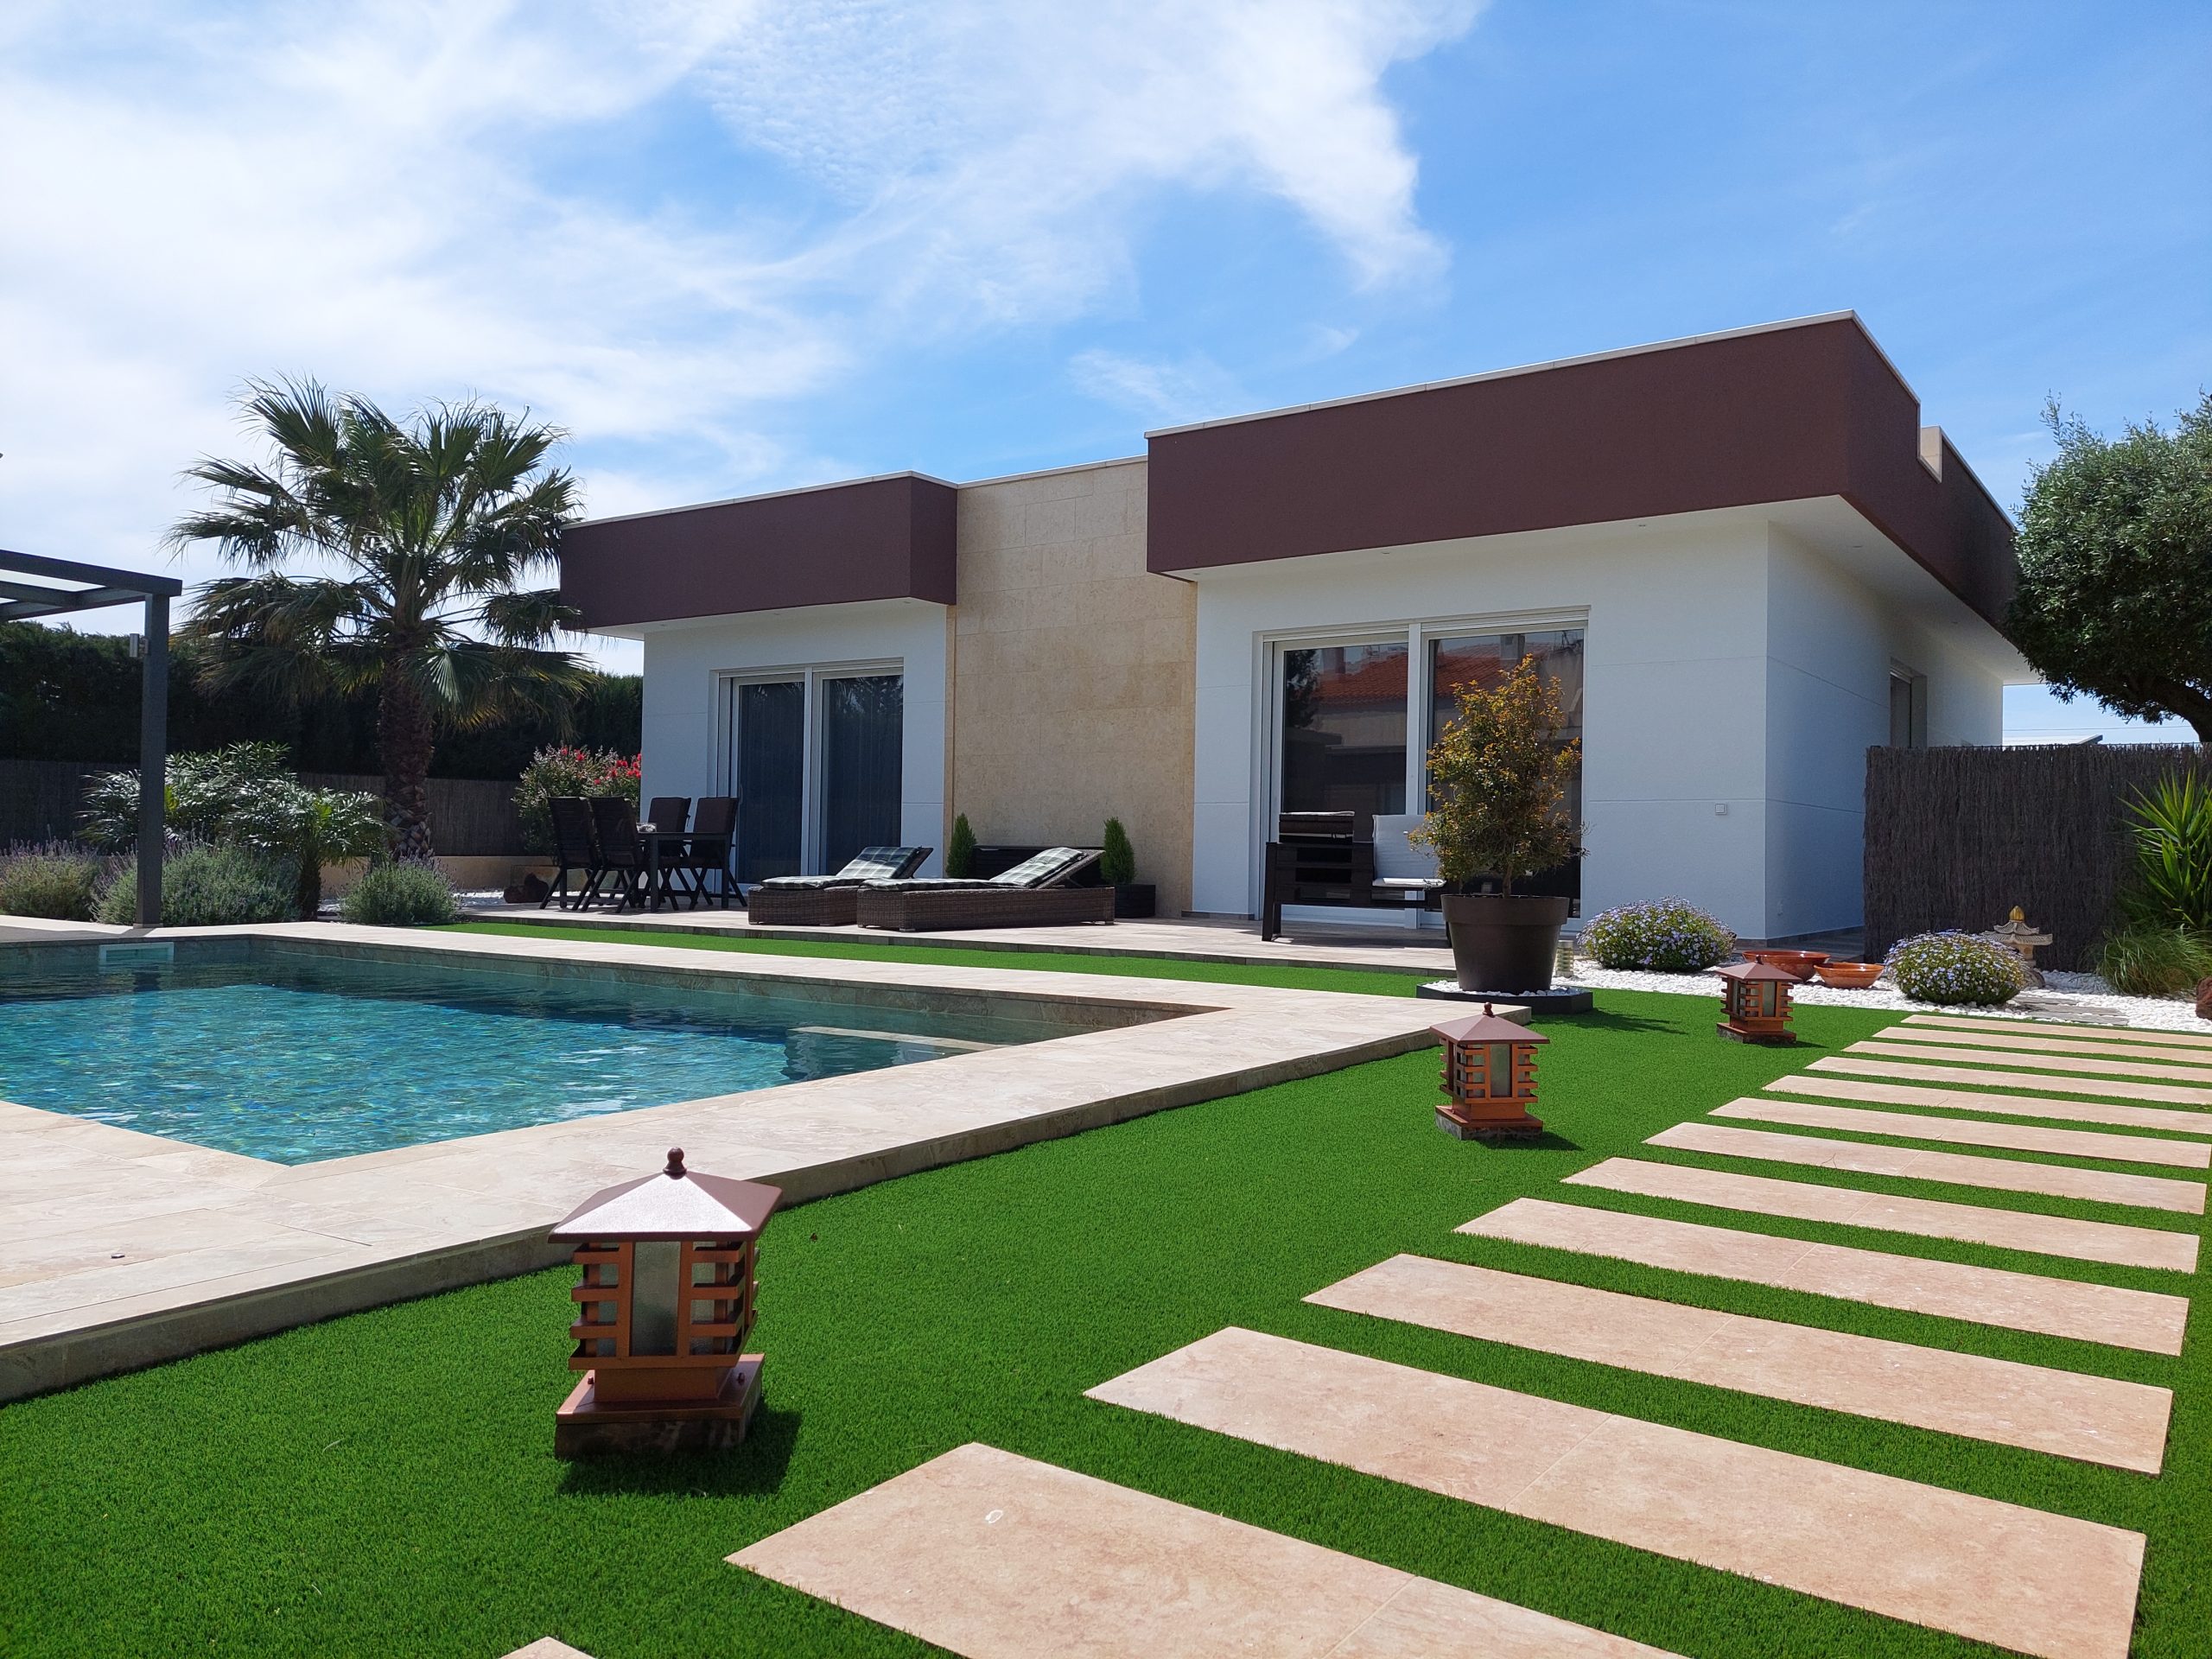 Magnífico chalet moderno y casa de invitados de 190 m2 toda planta baja en parcela de 926 m2 con piscina y jardín